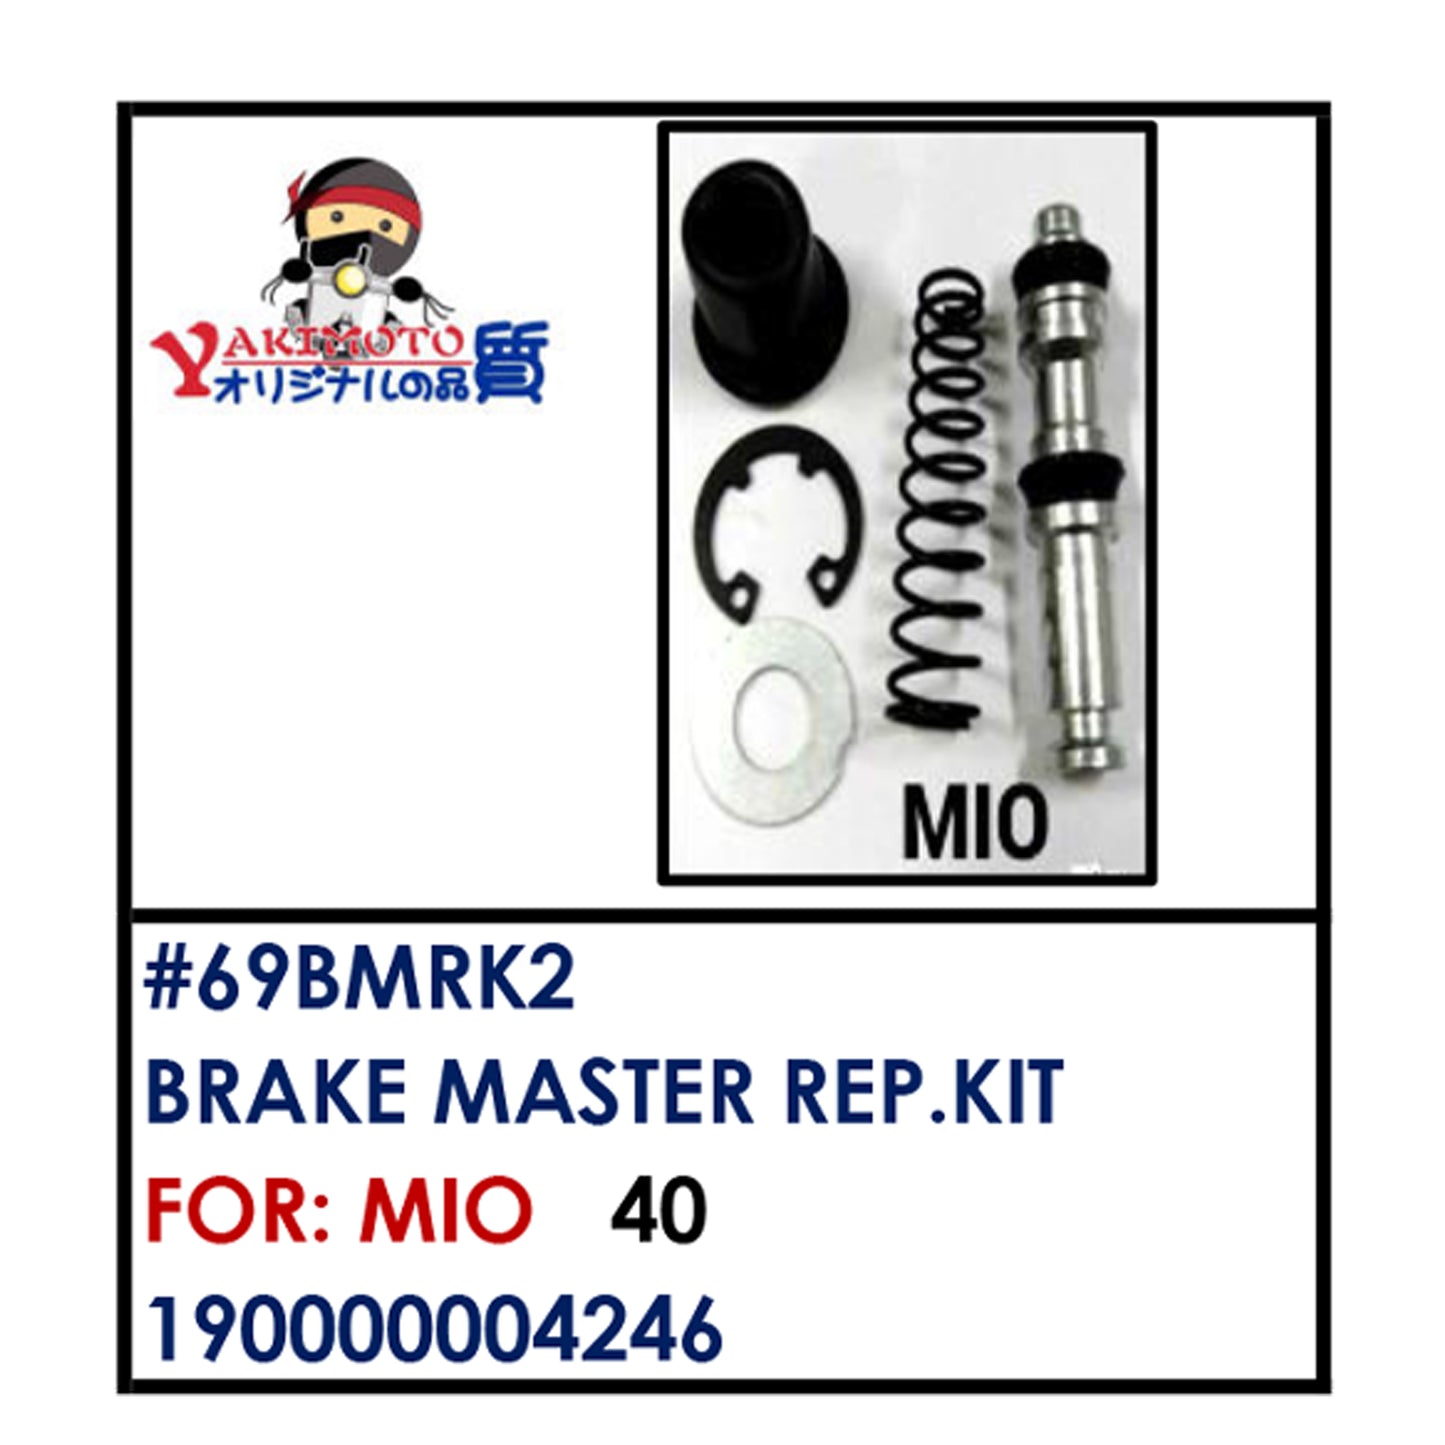 BRAKE MASTER REAPIR KIT (69BMRK2) - MIO | YAKIMOTO - BESTPARTS.PH